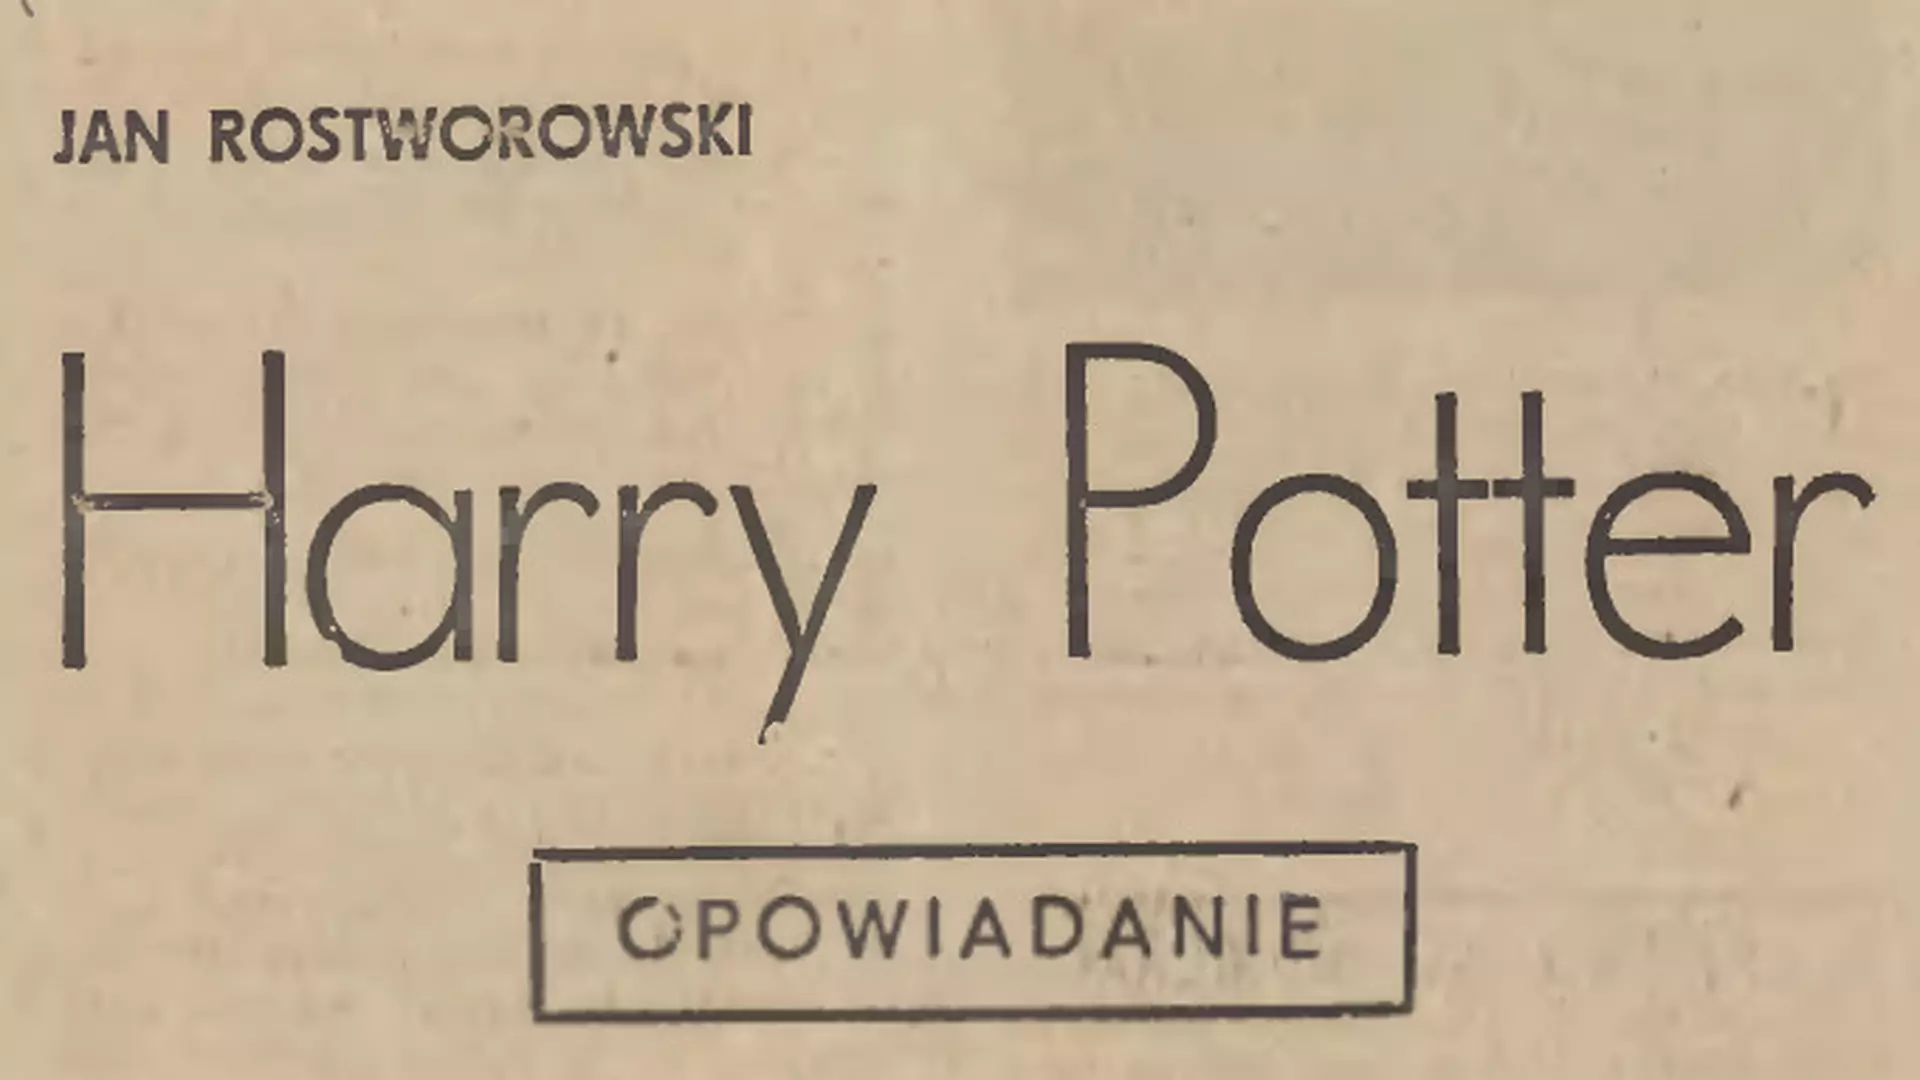 Harry Potter powstał w Polsce prawie 20 lat przed książką J.K. Rowling